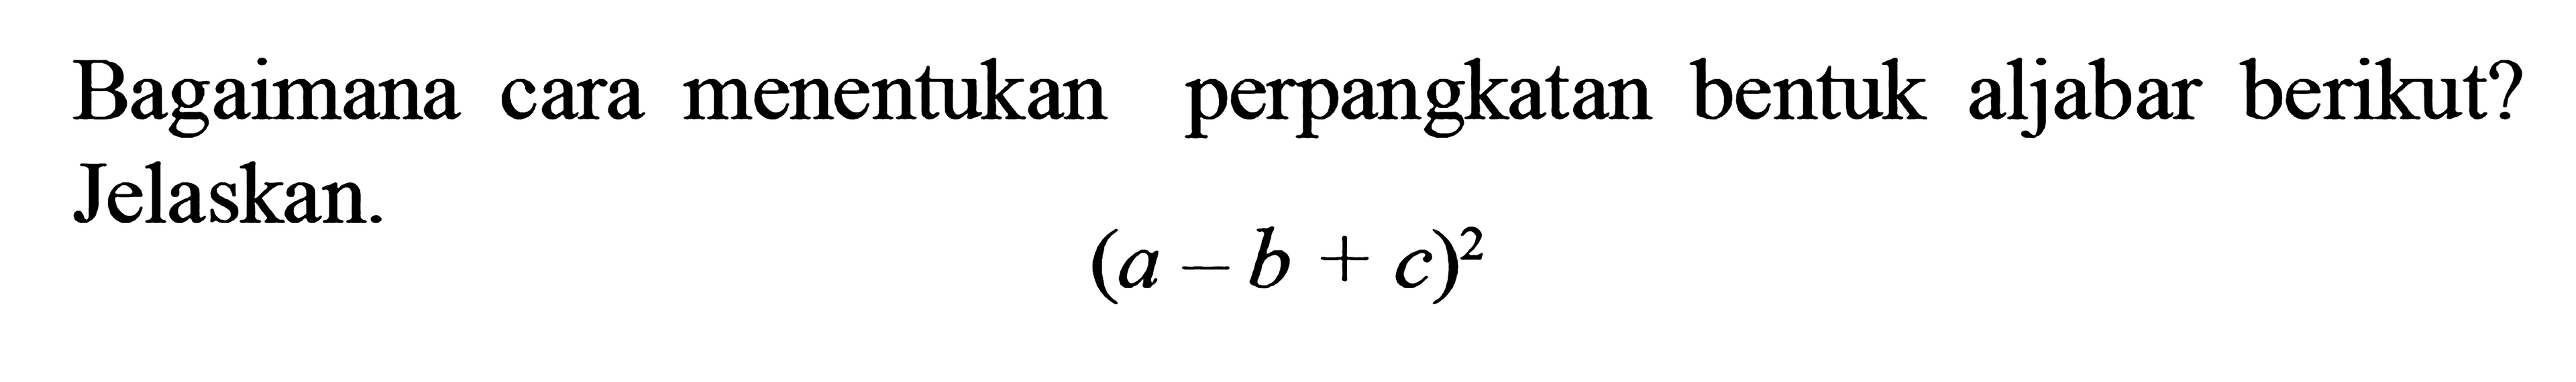 Bagaiman cara menentukan perpangkatan bentuk aljabar berikut? Jelaskan (a - b + c)^2